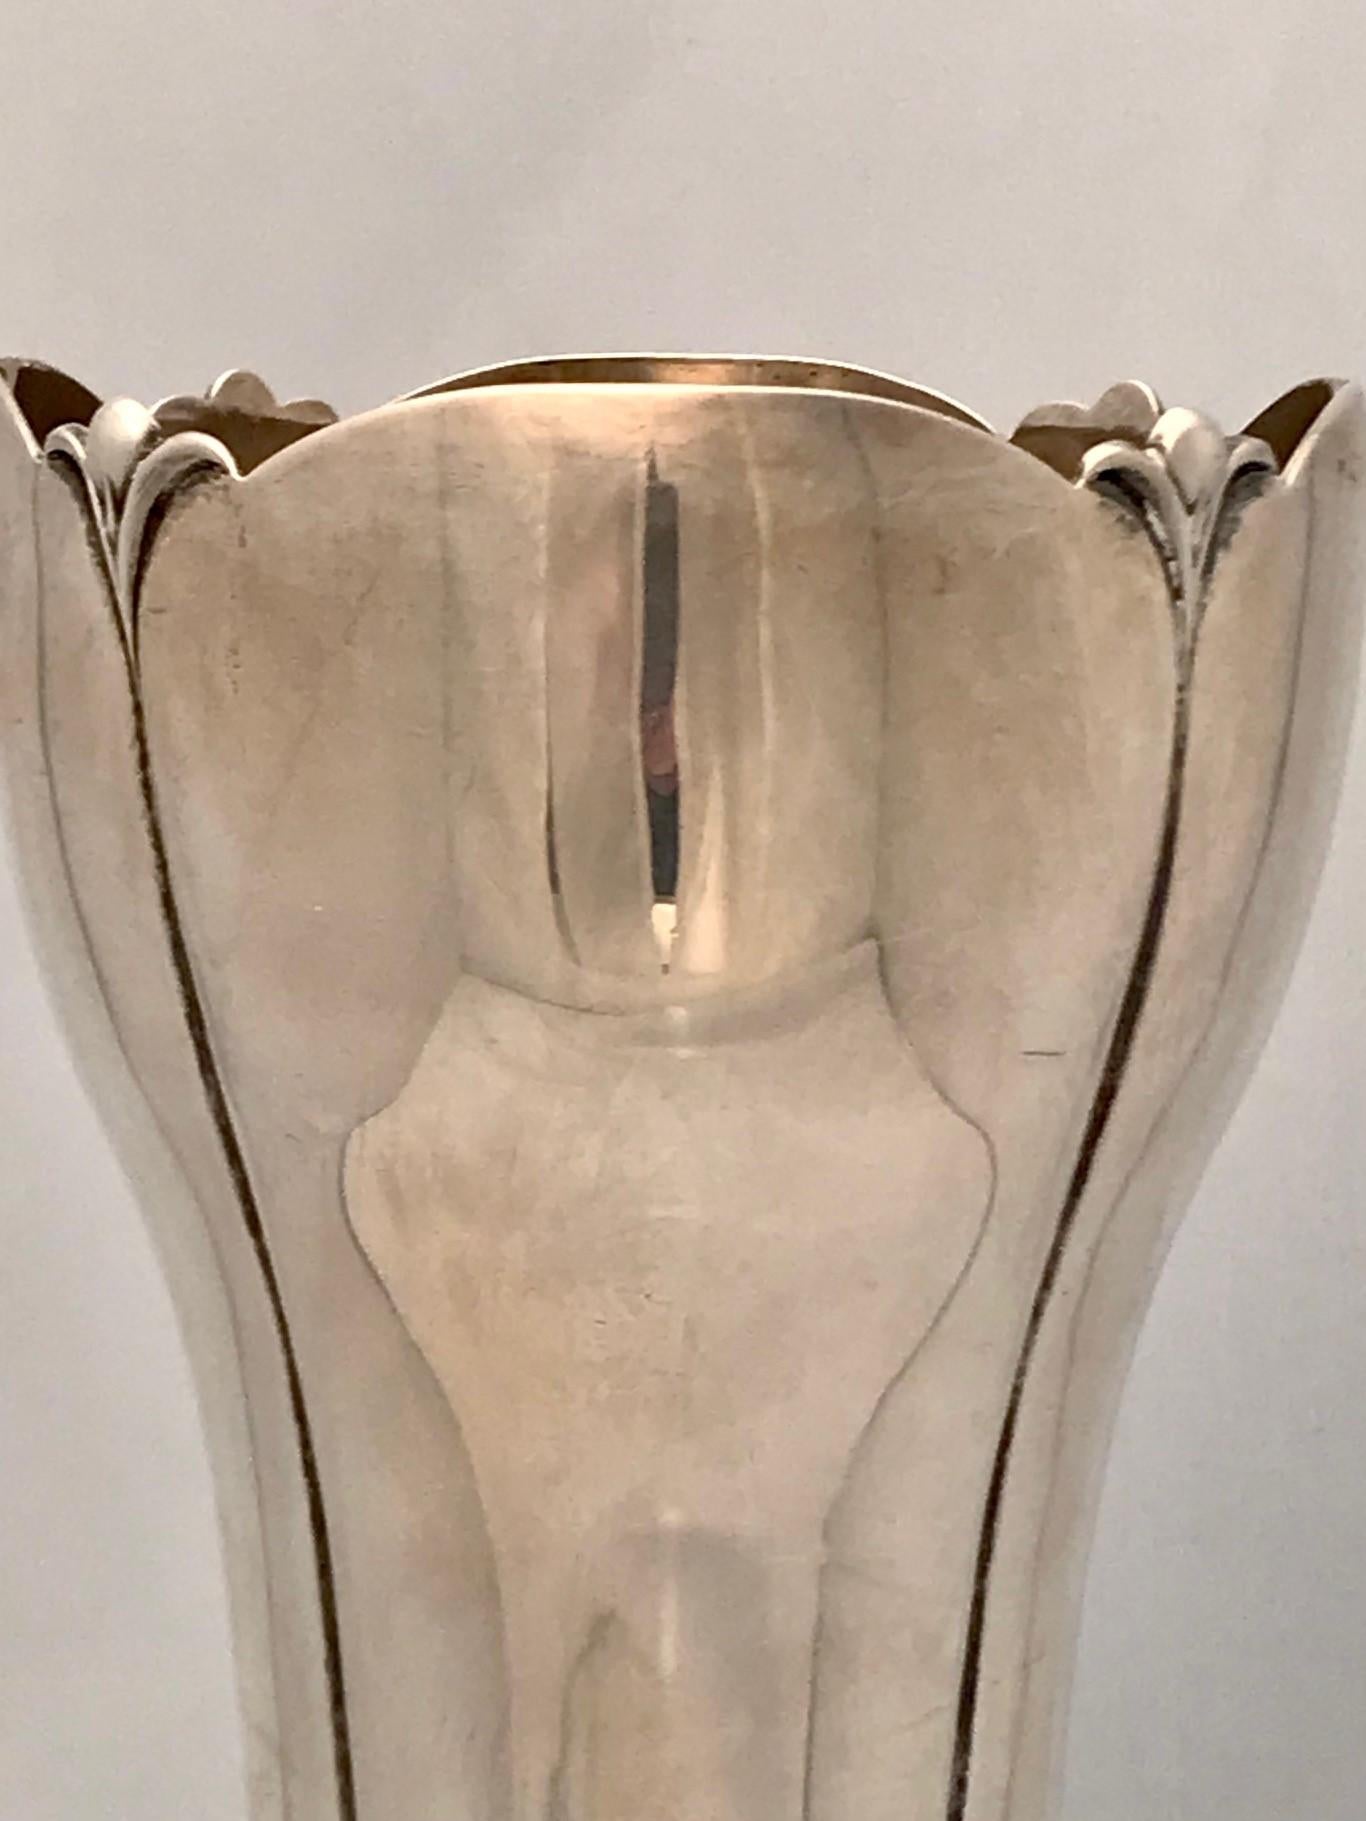 Diese schöne amerikanische Vase aus den 1930er Jahren ist zwar im Jugendstil, aber im Art déco angesiedelt. Es lässt sich gut mit den Arbeiten von Georg Jensen vergleichen. Der Sockel in Lotusform ist naturalistisch modelliert und steht auf vier